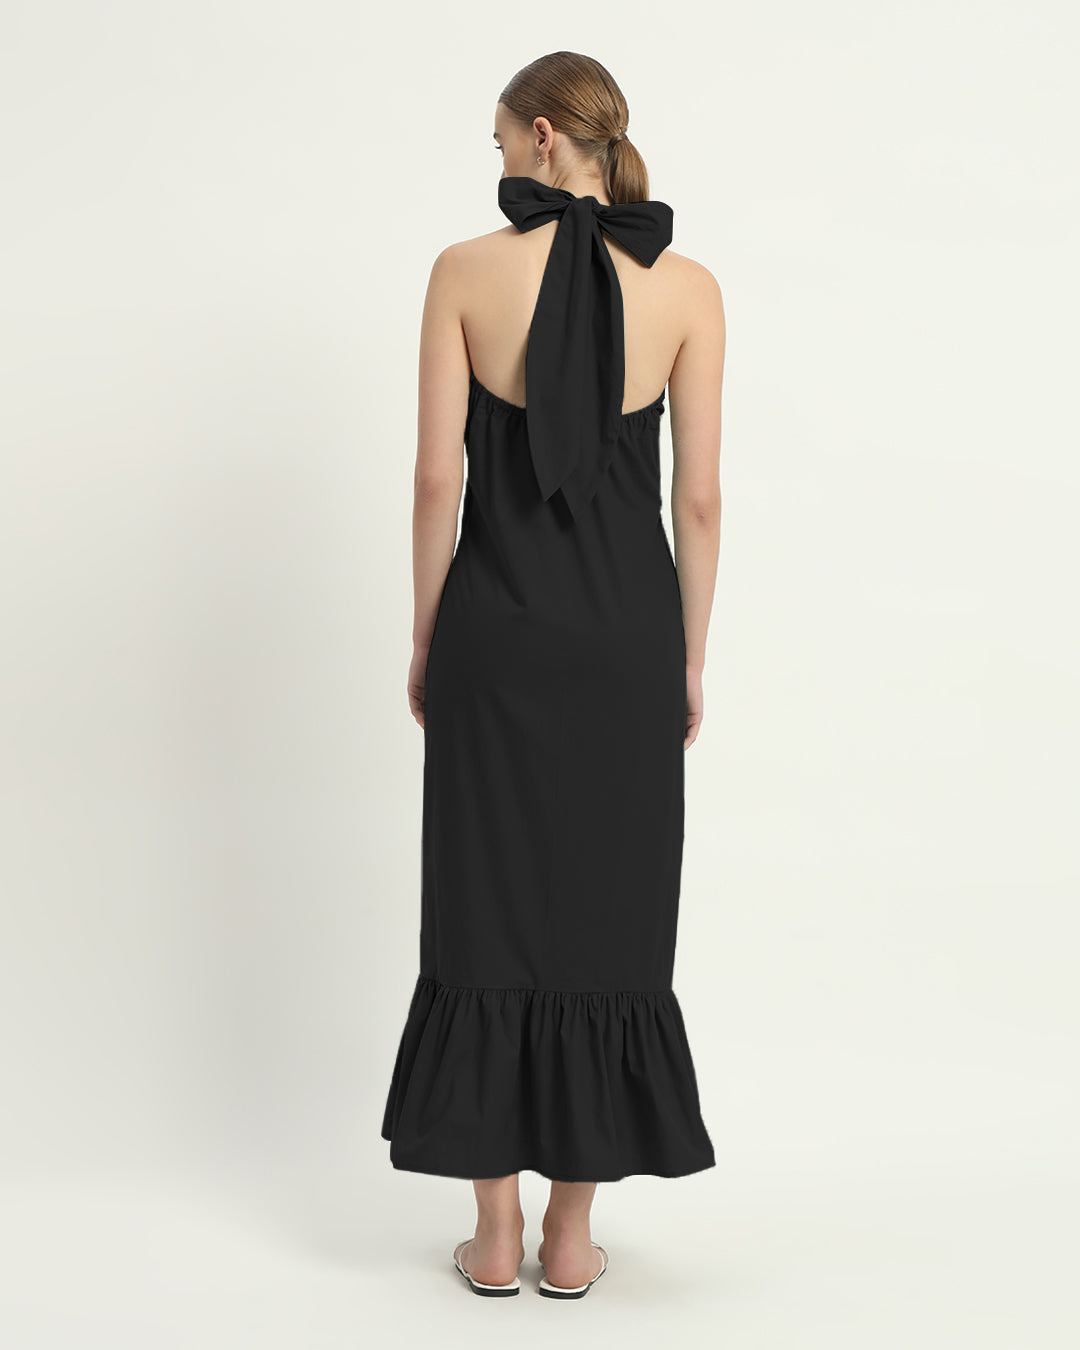 The Wellsville Noir Cotton Dress